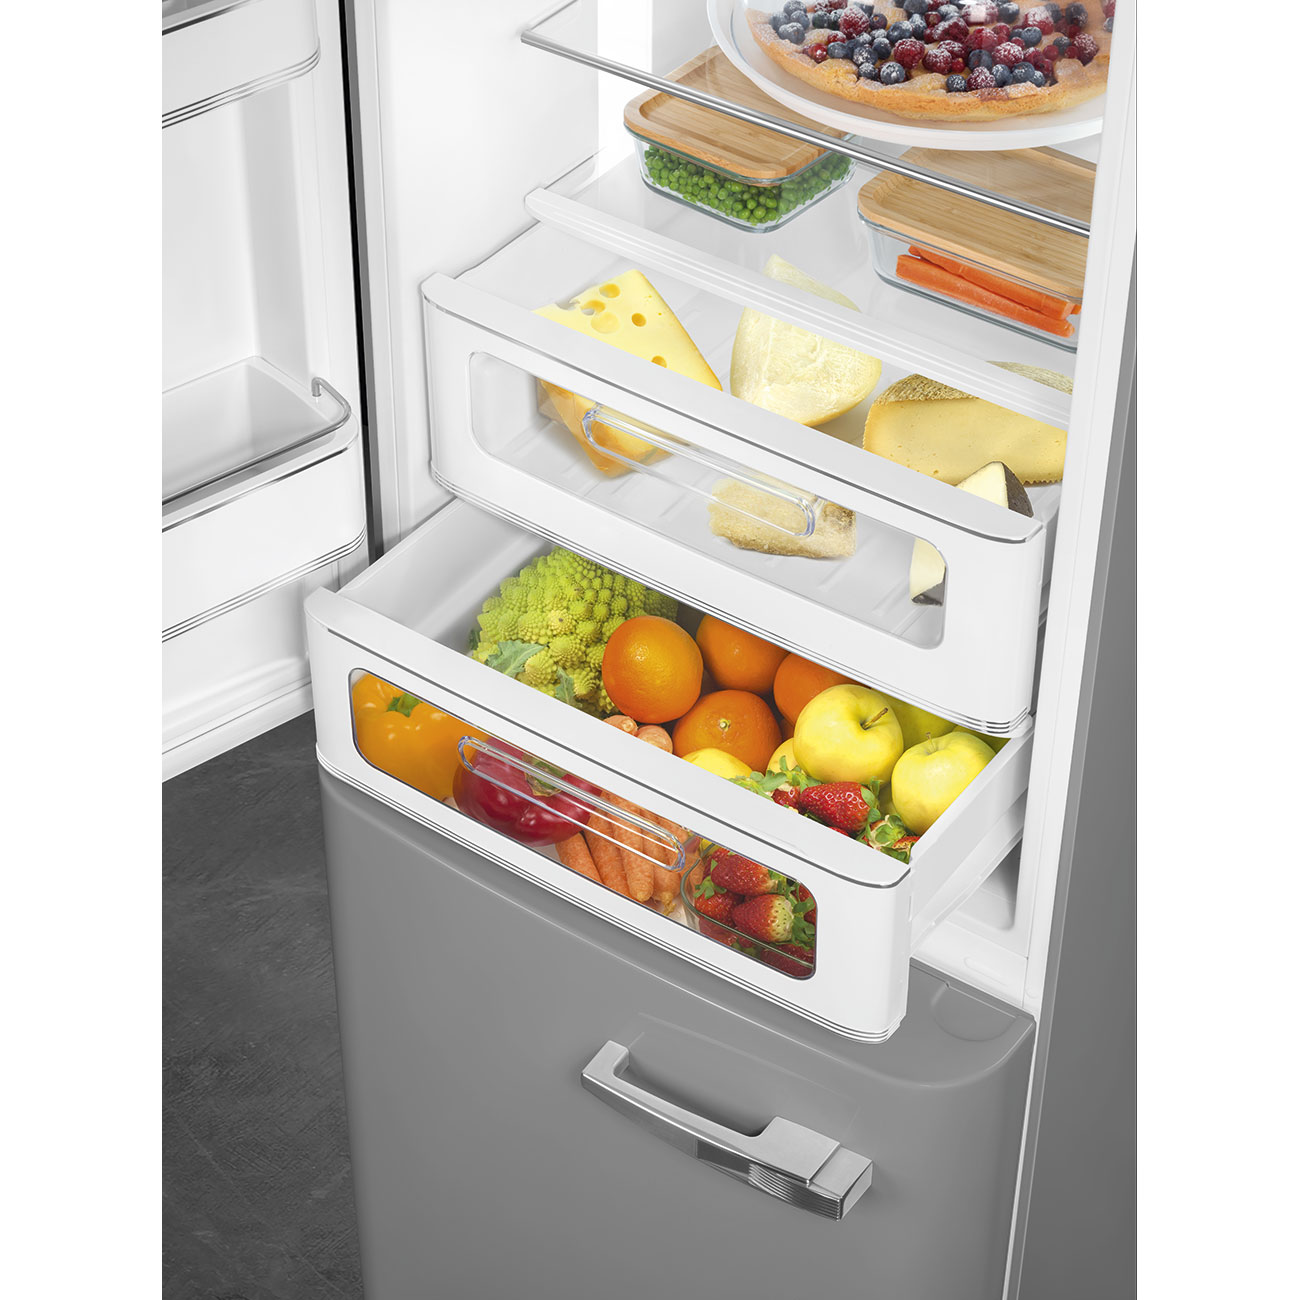 Silver refrigerator - Smeg_8